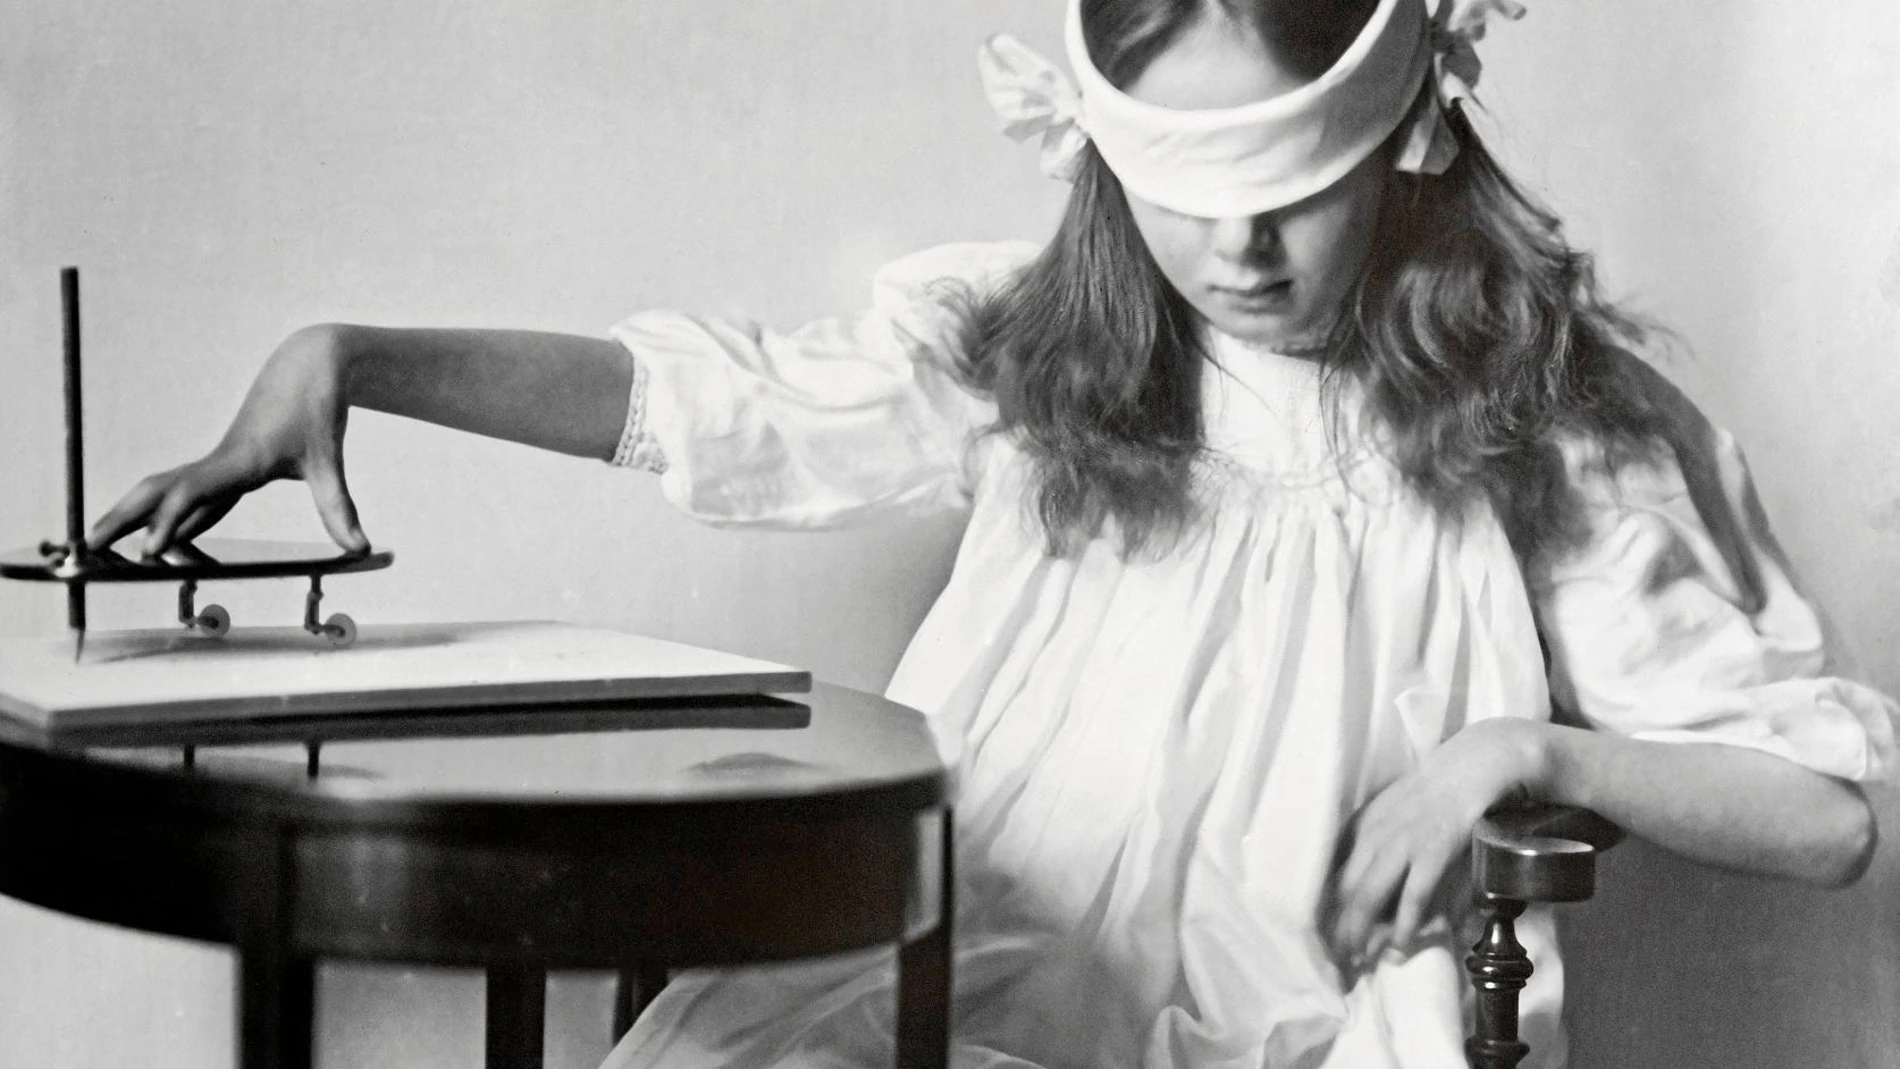 Una niña manipula una pequeña tabla apoyada y equipada con un lápiz vertical que se utilizaba en sesiones de espiritismo